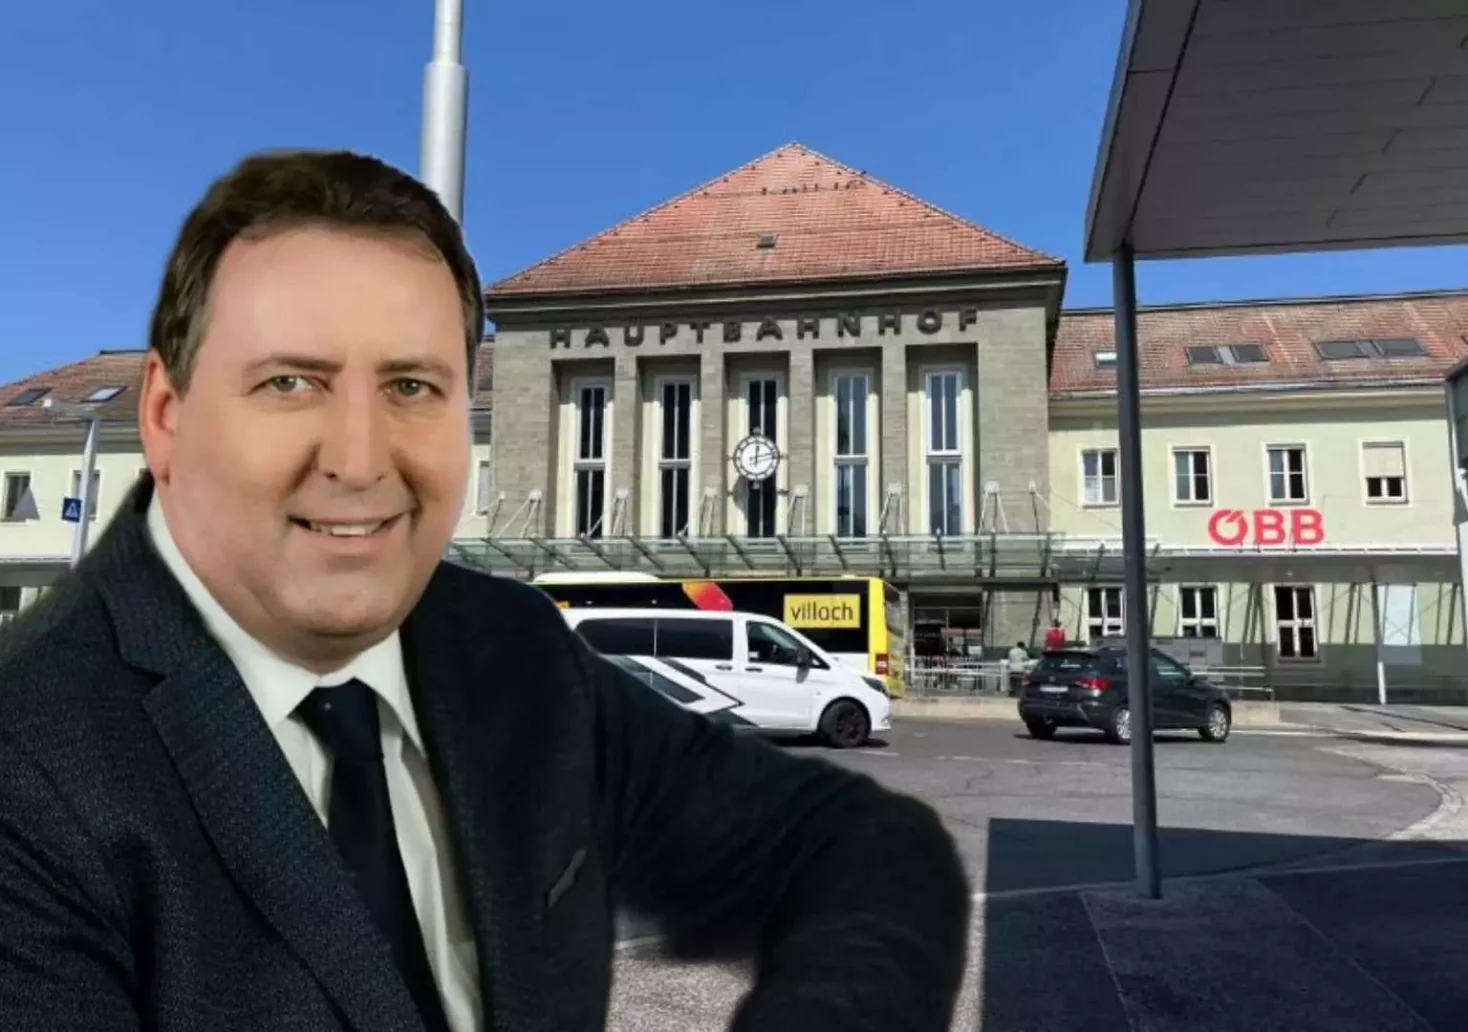 Foto in Beitrag von 5min.at: Zu sehen ist Erwin Baumann vor dem Villacher Hauptbahnhof.